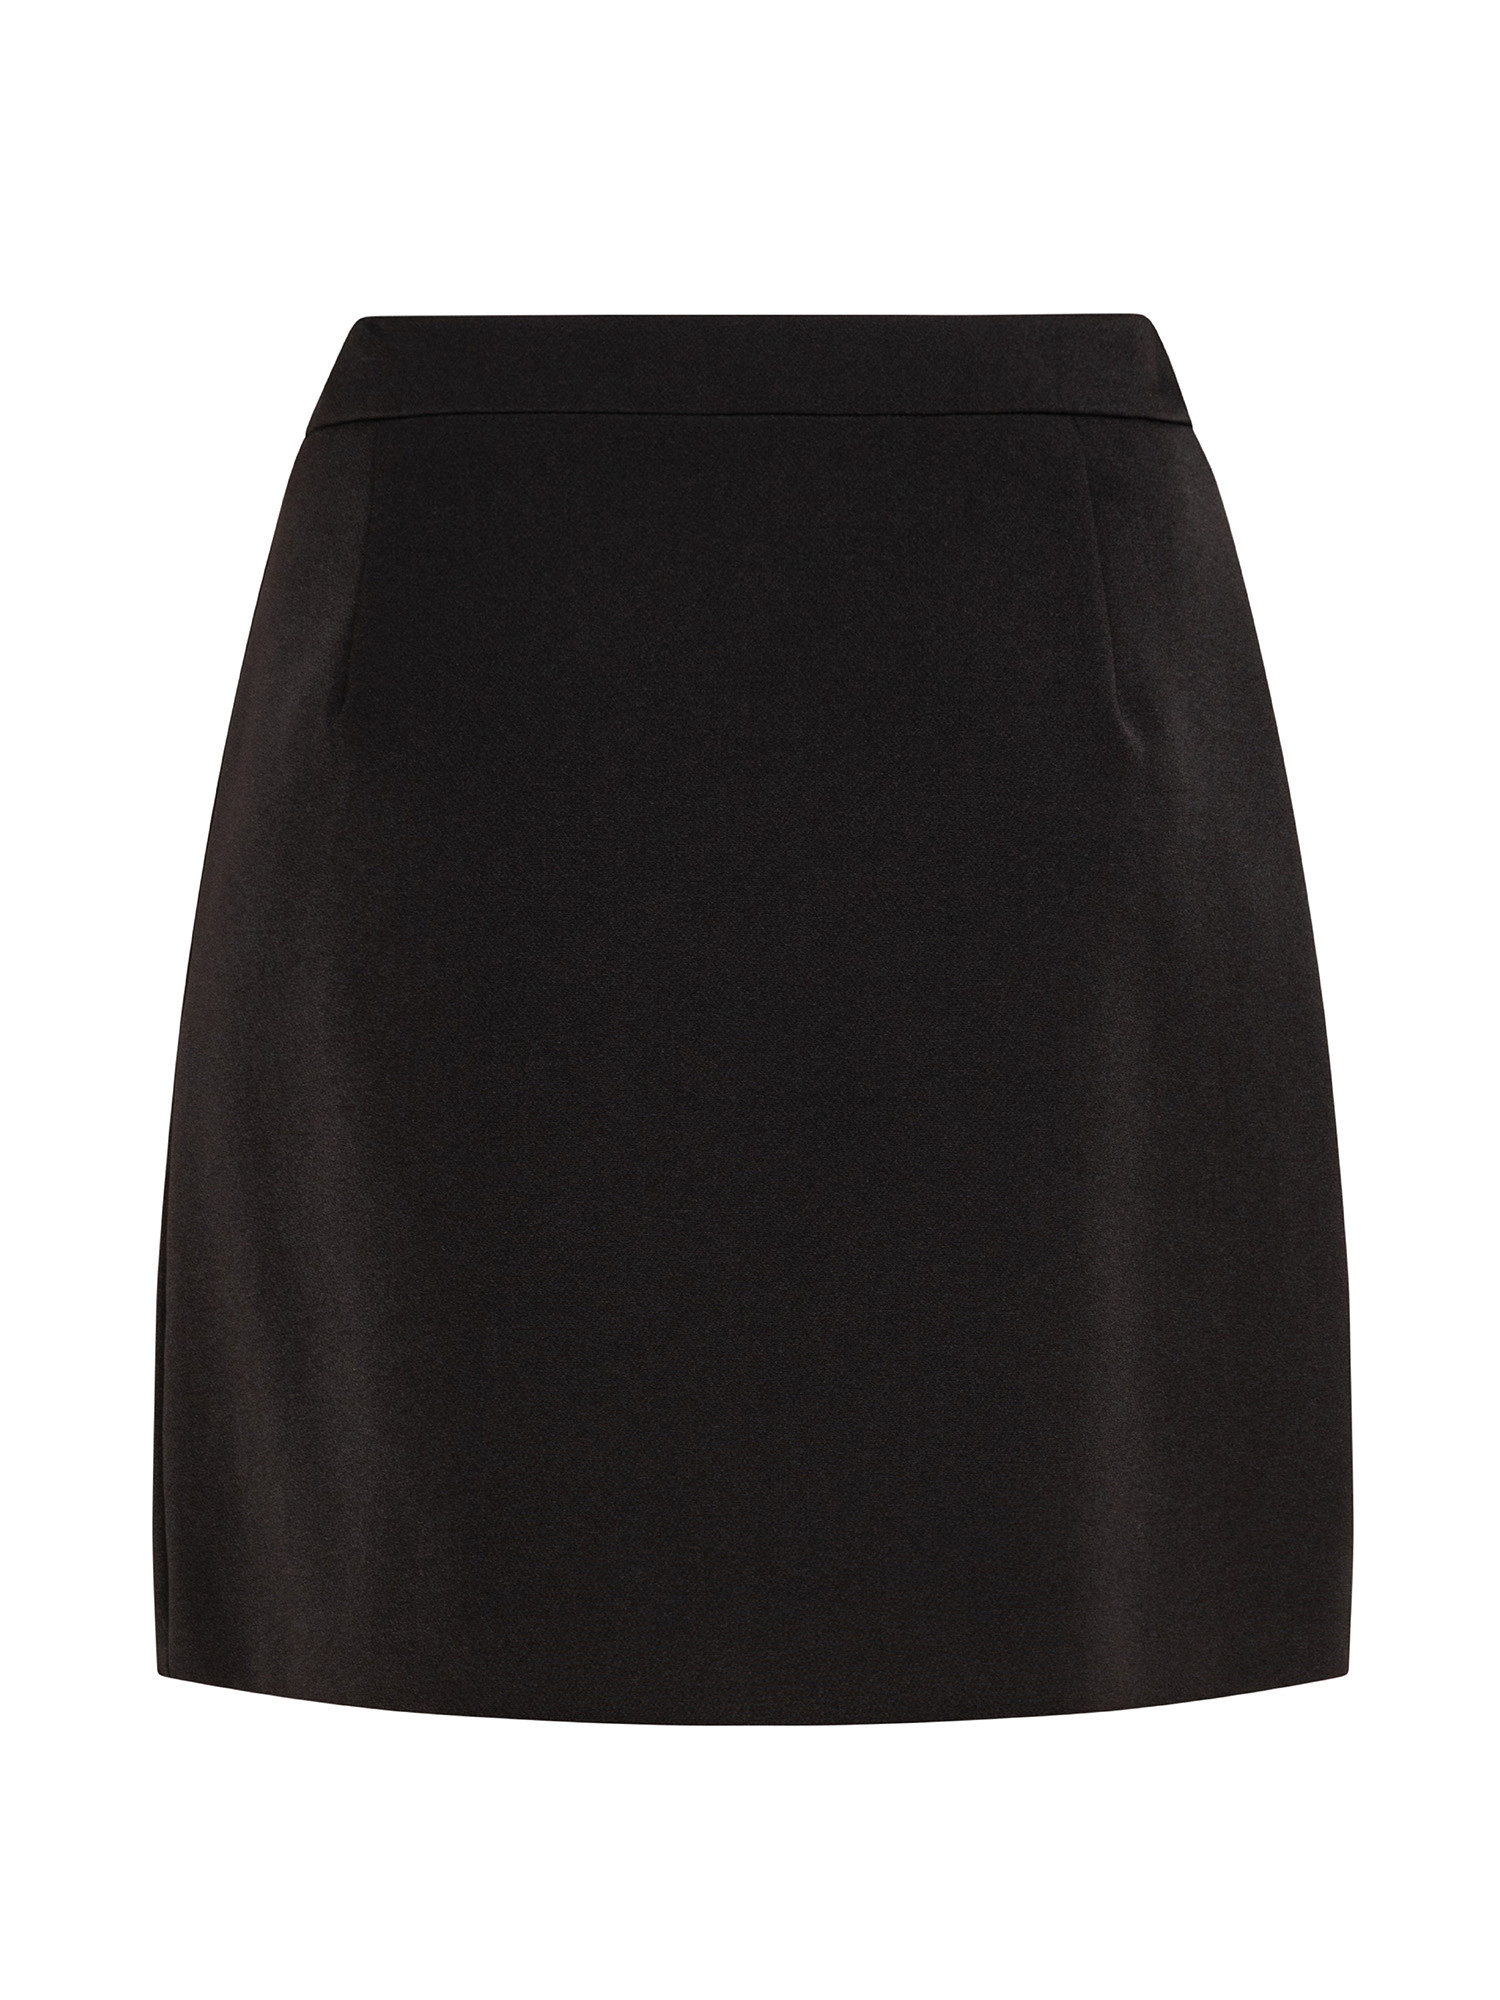 Skirt, Black, large image number 1